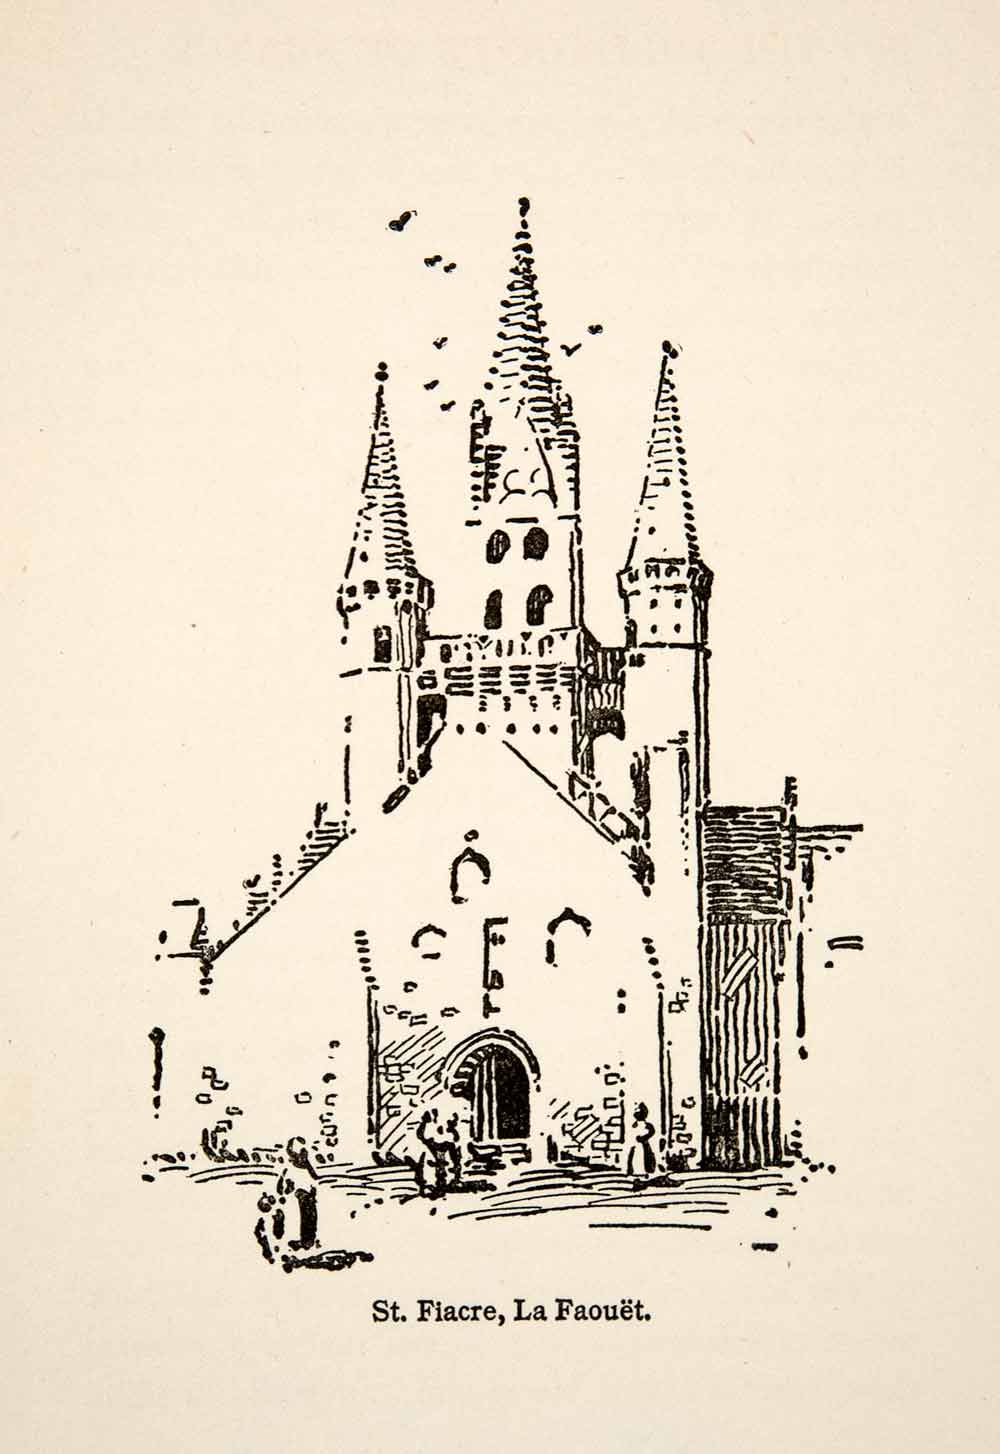 1917 Wood Engraving Saint Fiacre La Faouet France Roy L. Hilton Church XGHB6